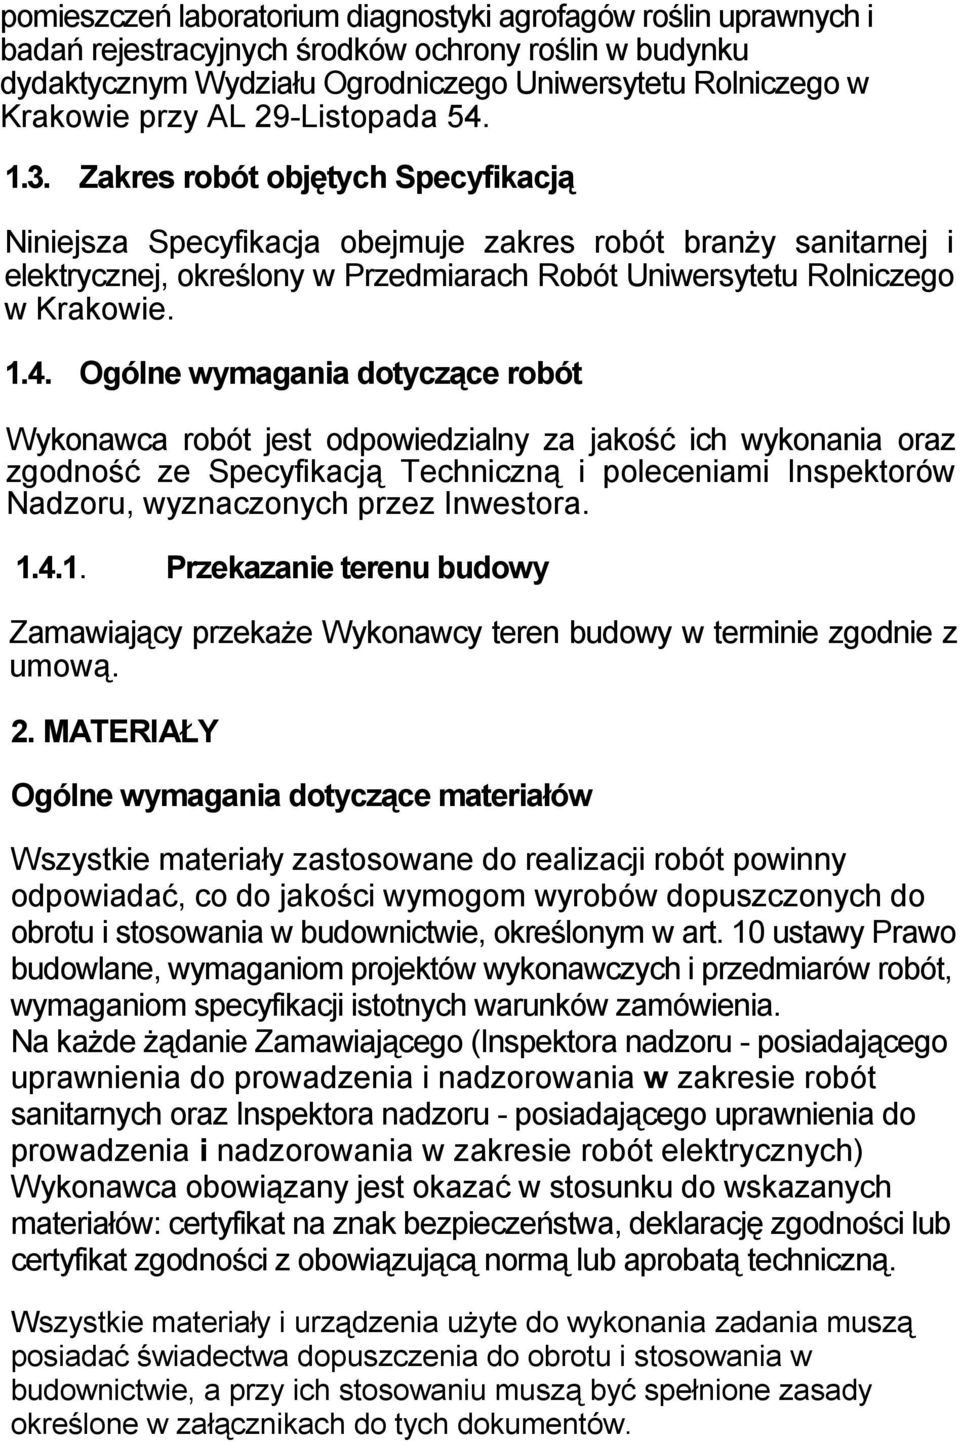 Zakres robót objętych Specyfikacją Niniejsza Specyfikacja obejmuje zakres robót branŝy sanitarnej i elektrycznej, określony w Przedmiarach Robót Uniwersytetu Rolniczego w Krakowie. 1.4.